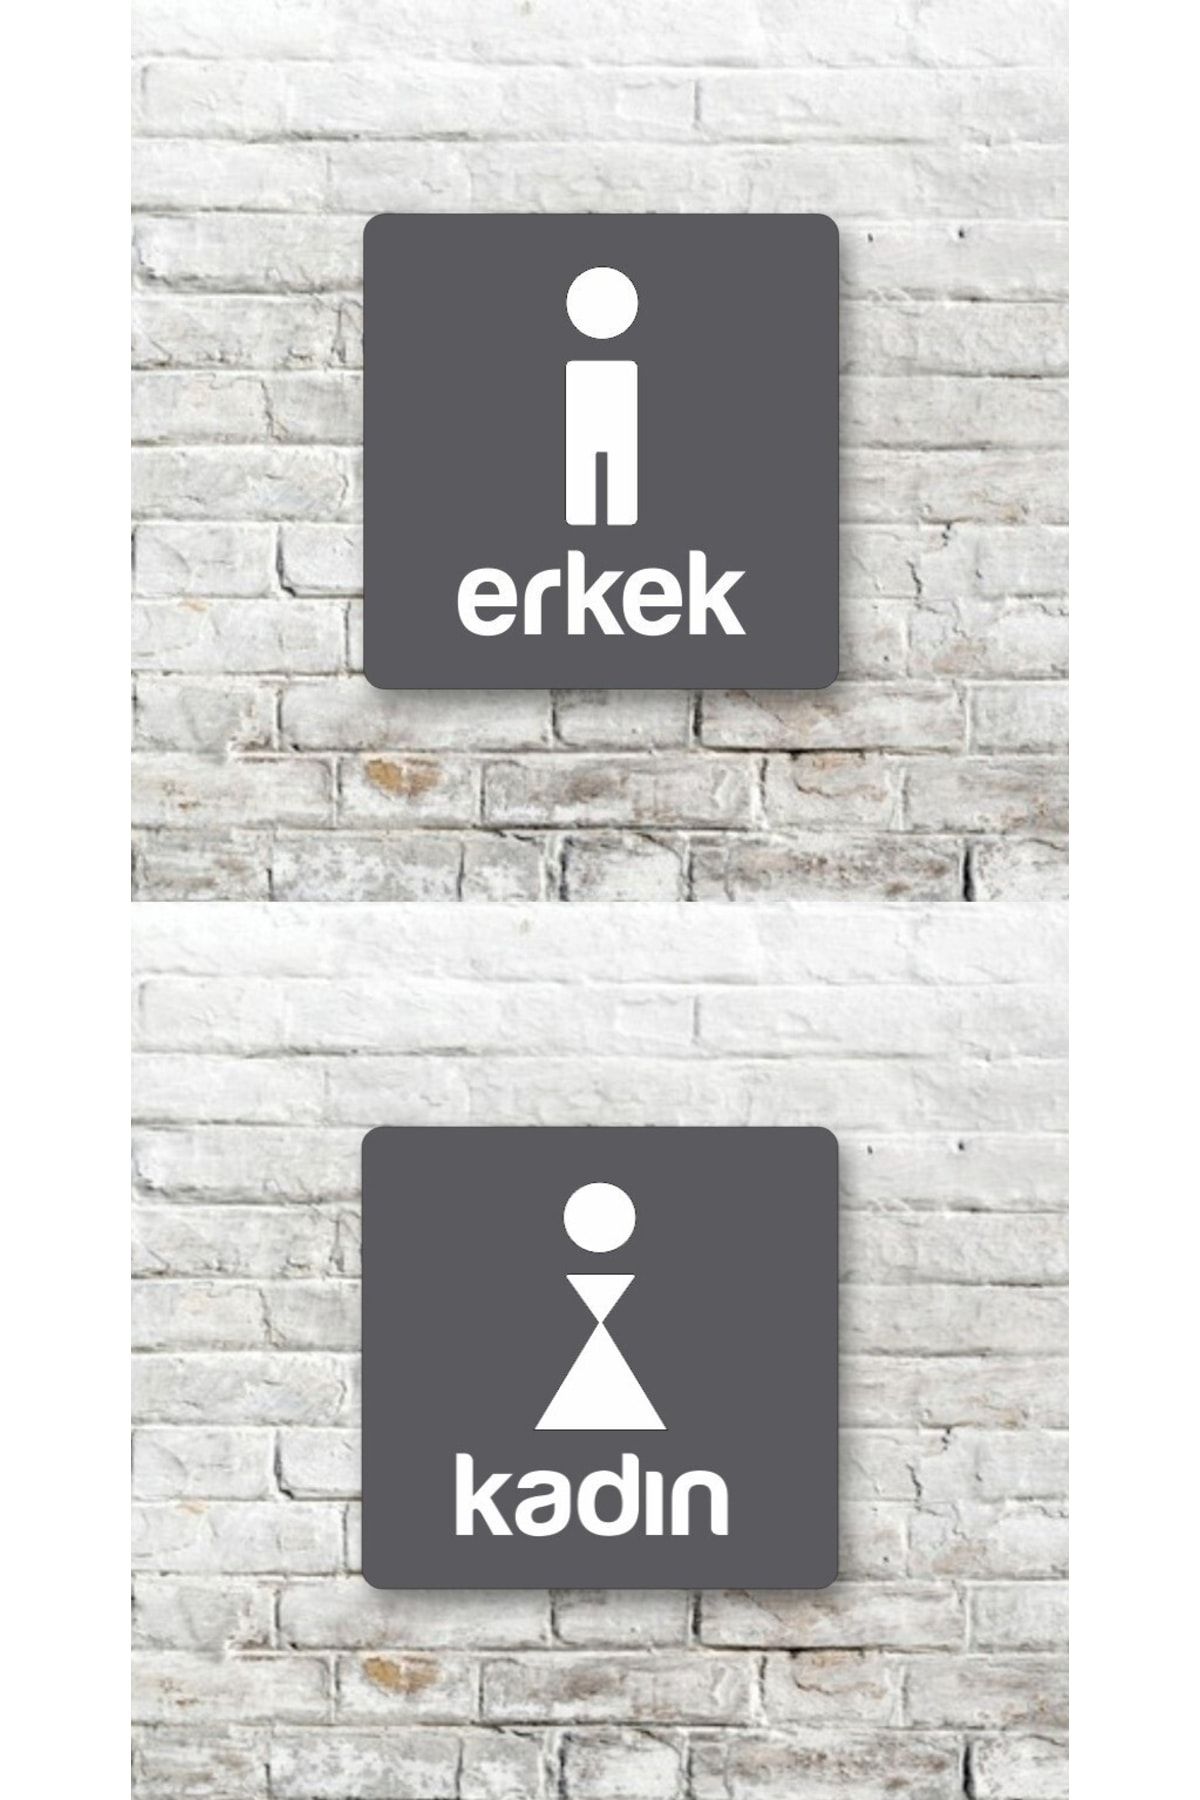 Fec Reklam Wc Tuvalet Pleksi Kapı Yönlendirme Kadın-erkek Tuvalet Levhası Wc Yönlendirme Tabelası Duvar Levhası